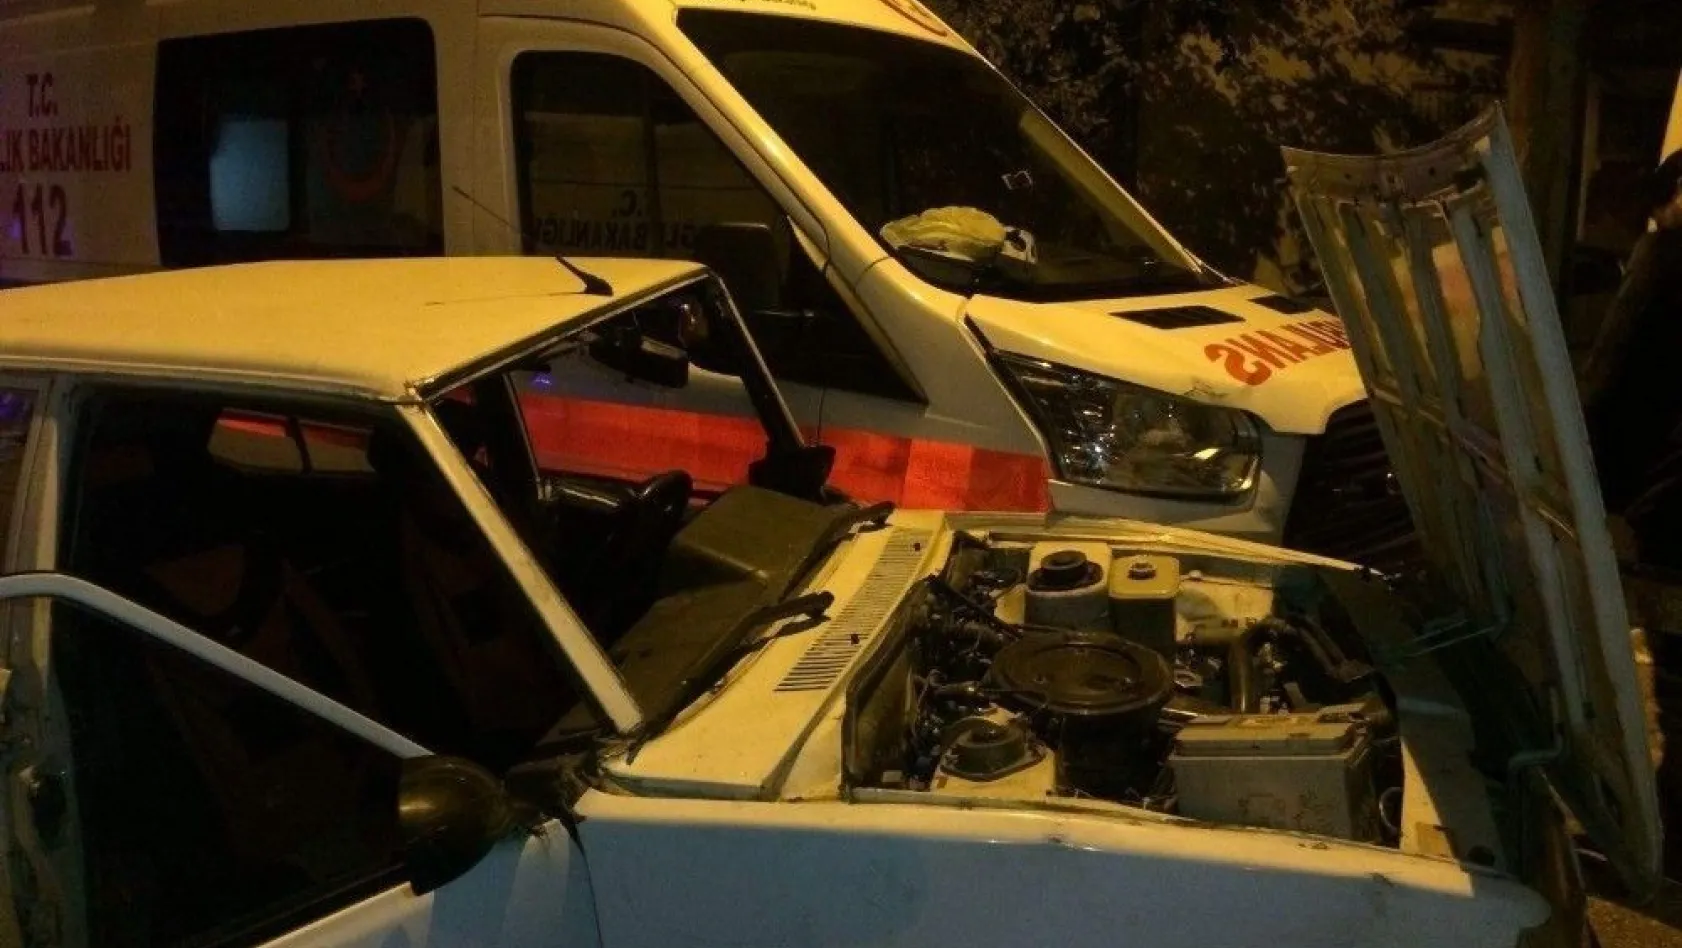 Ambulans ile otomobil çarpıştı: 4 yaralı
